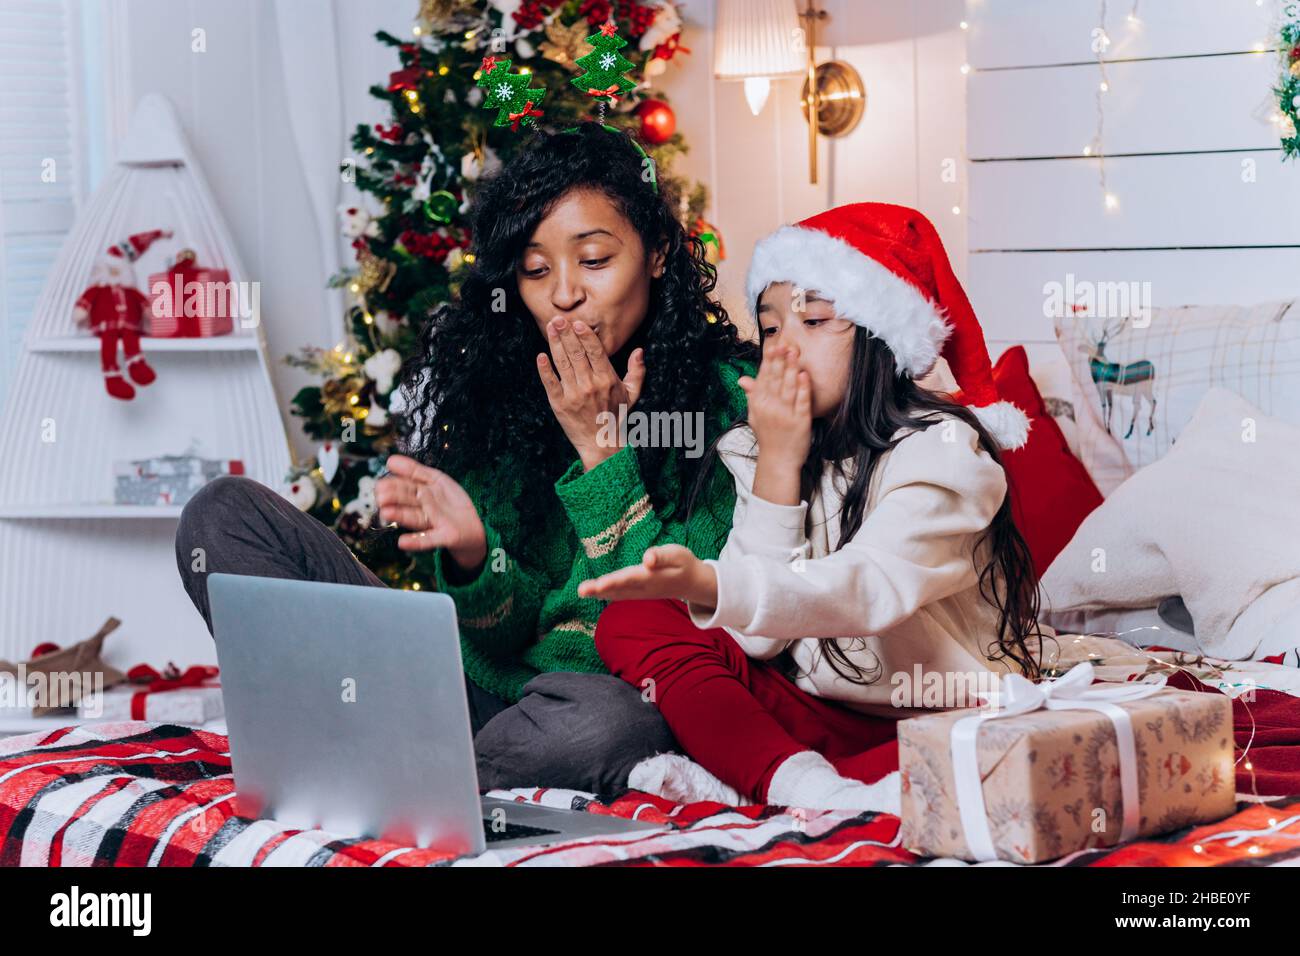 Una mujer afroamericana y una hija morena en el sombrero de Santa se sientan entre decoraciones navideñas y besos soplados charlando en videollamada a través de un ordenador portátil Foto de stock